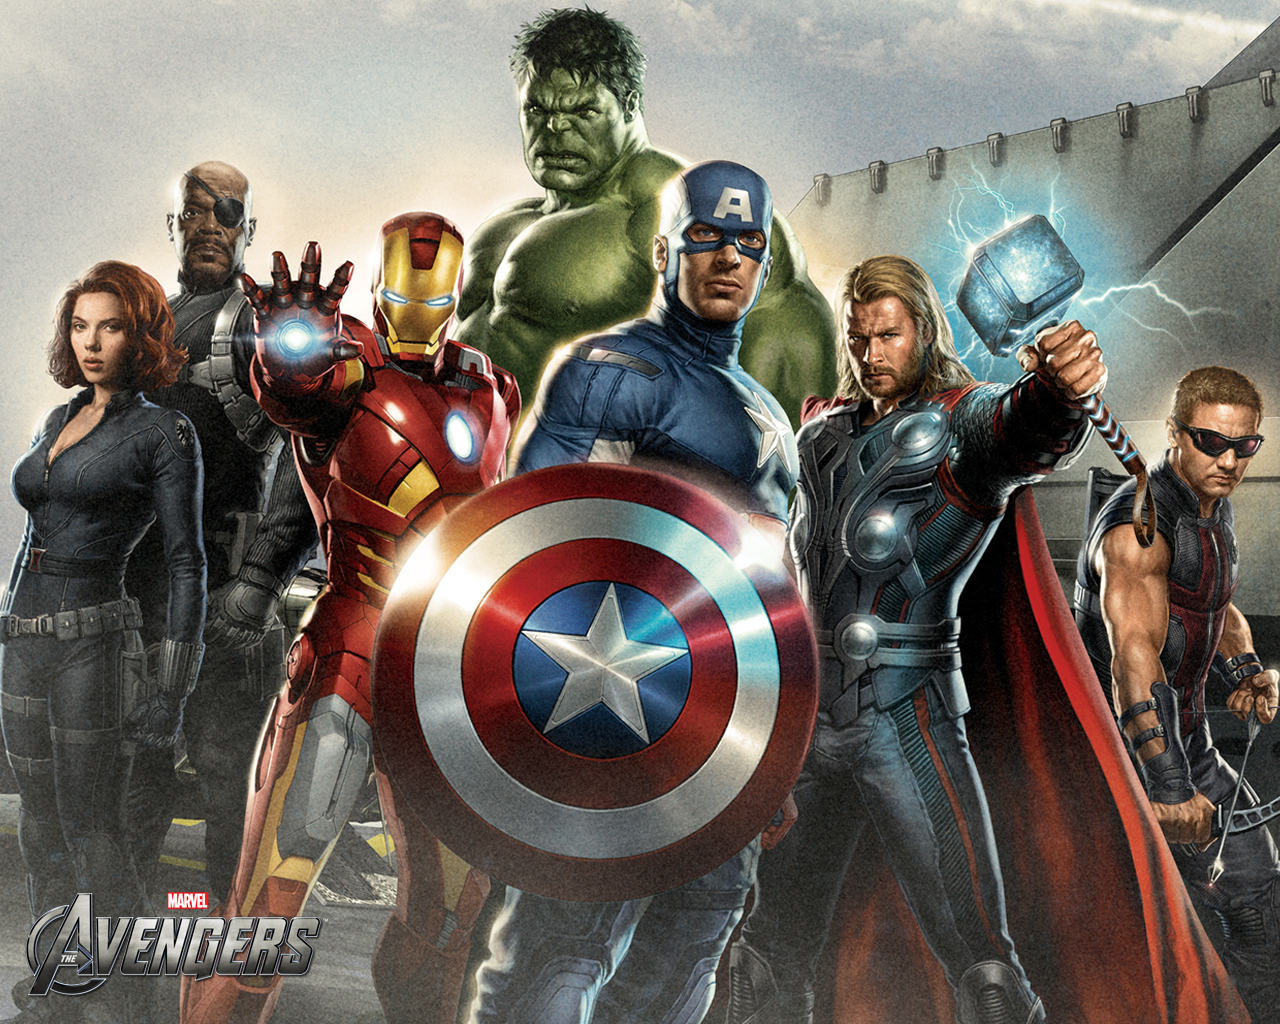  New The Avengers PC Wallpaper Images   Marvel   MarvelousNewscom